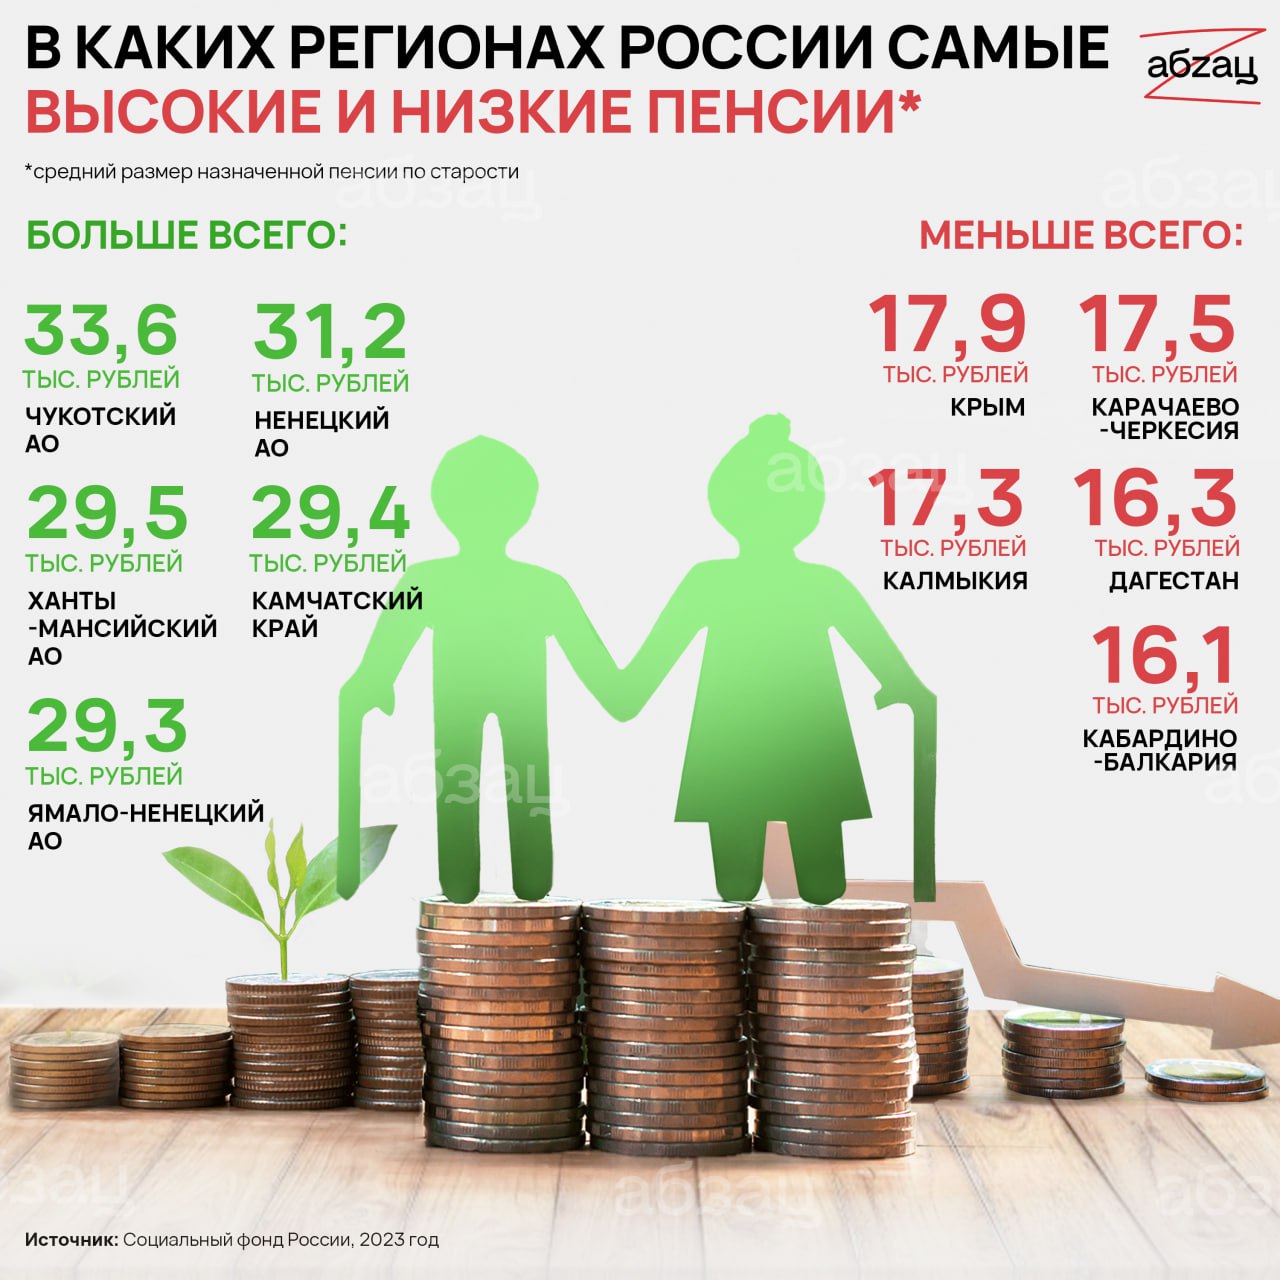 Самая высокая пенсия в России. Самые высокие пенсии в России по регионам. Сумма социальной пенсии в 2023 году. Средняя пенсия в России в 2023.